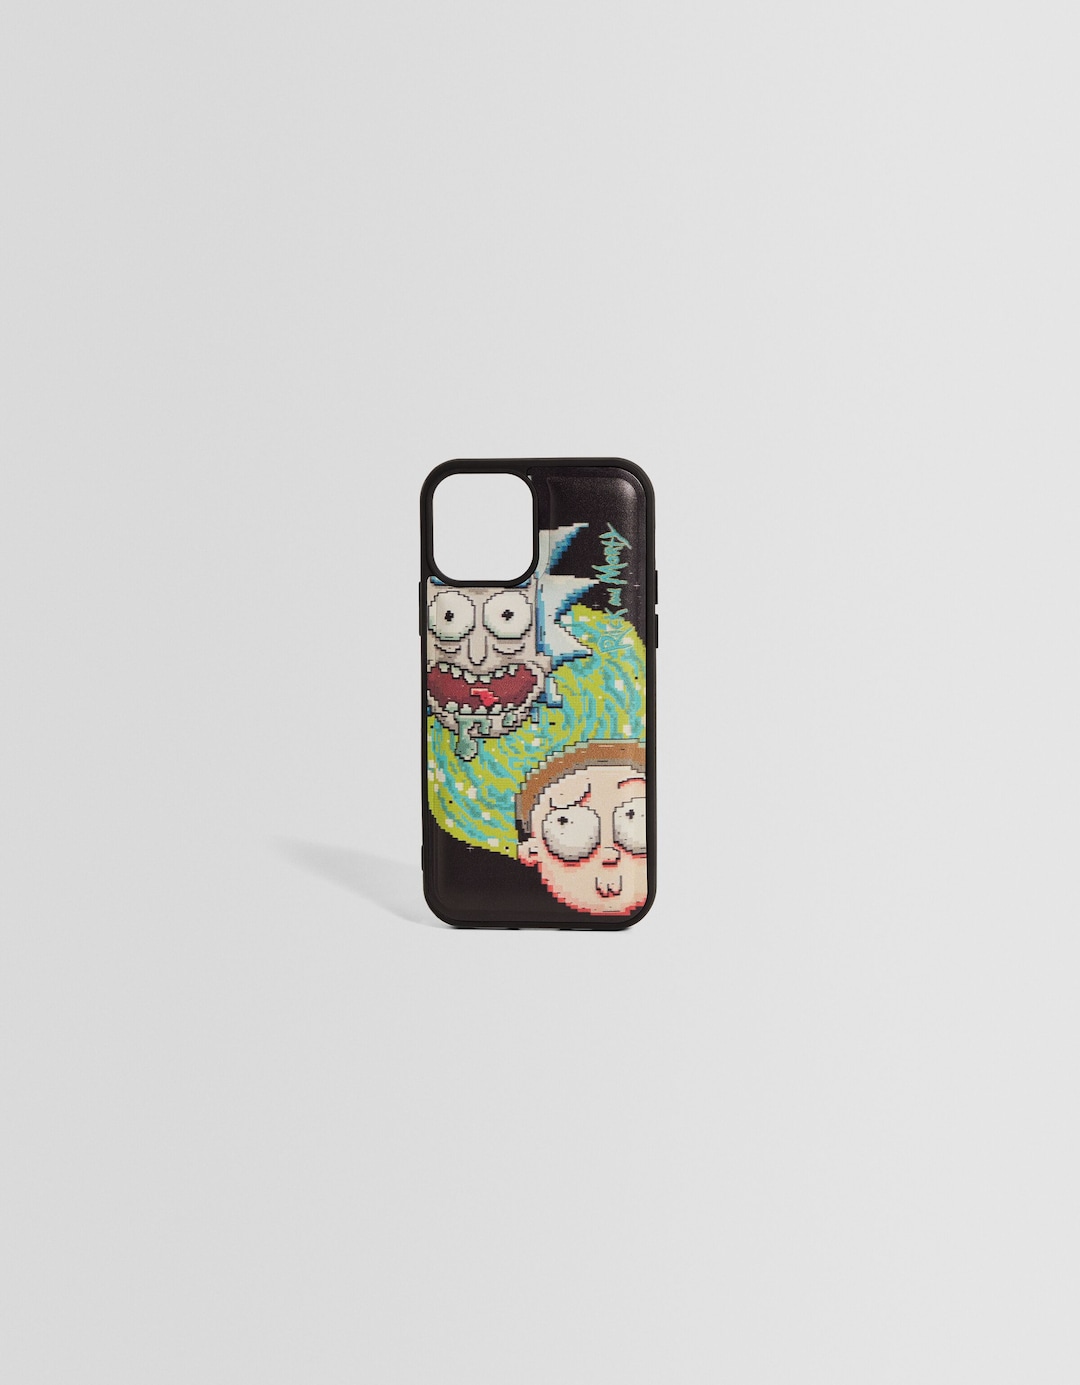 Capa telemóvel Rick & Morty estampado